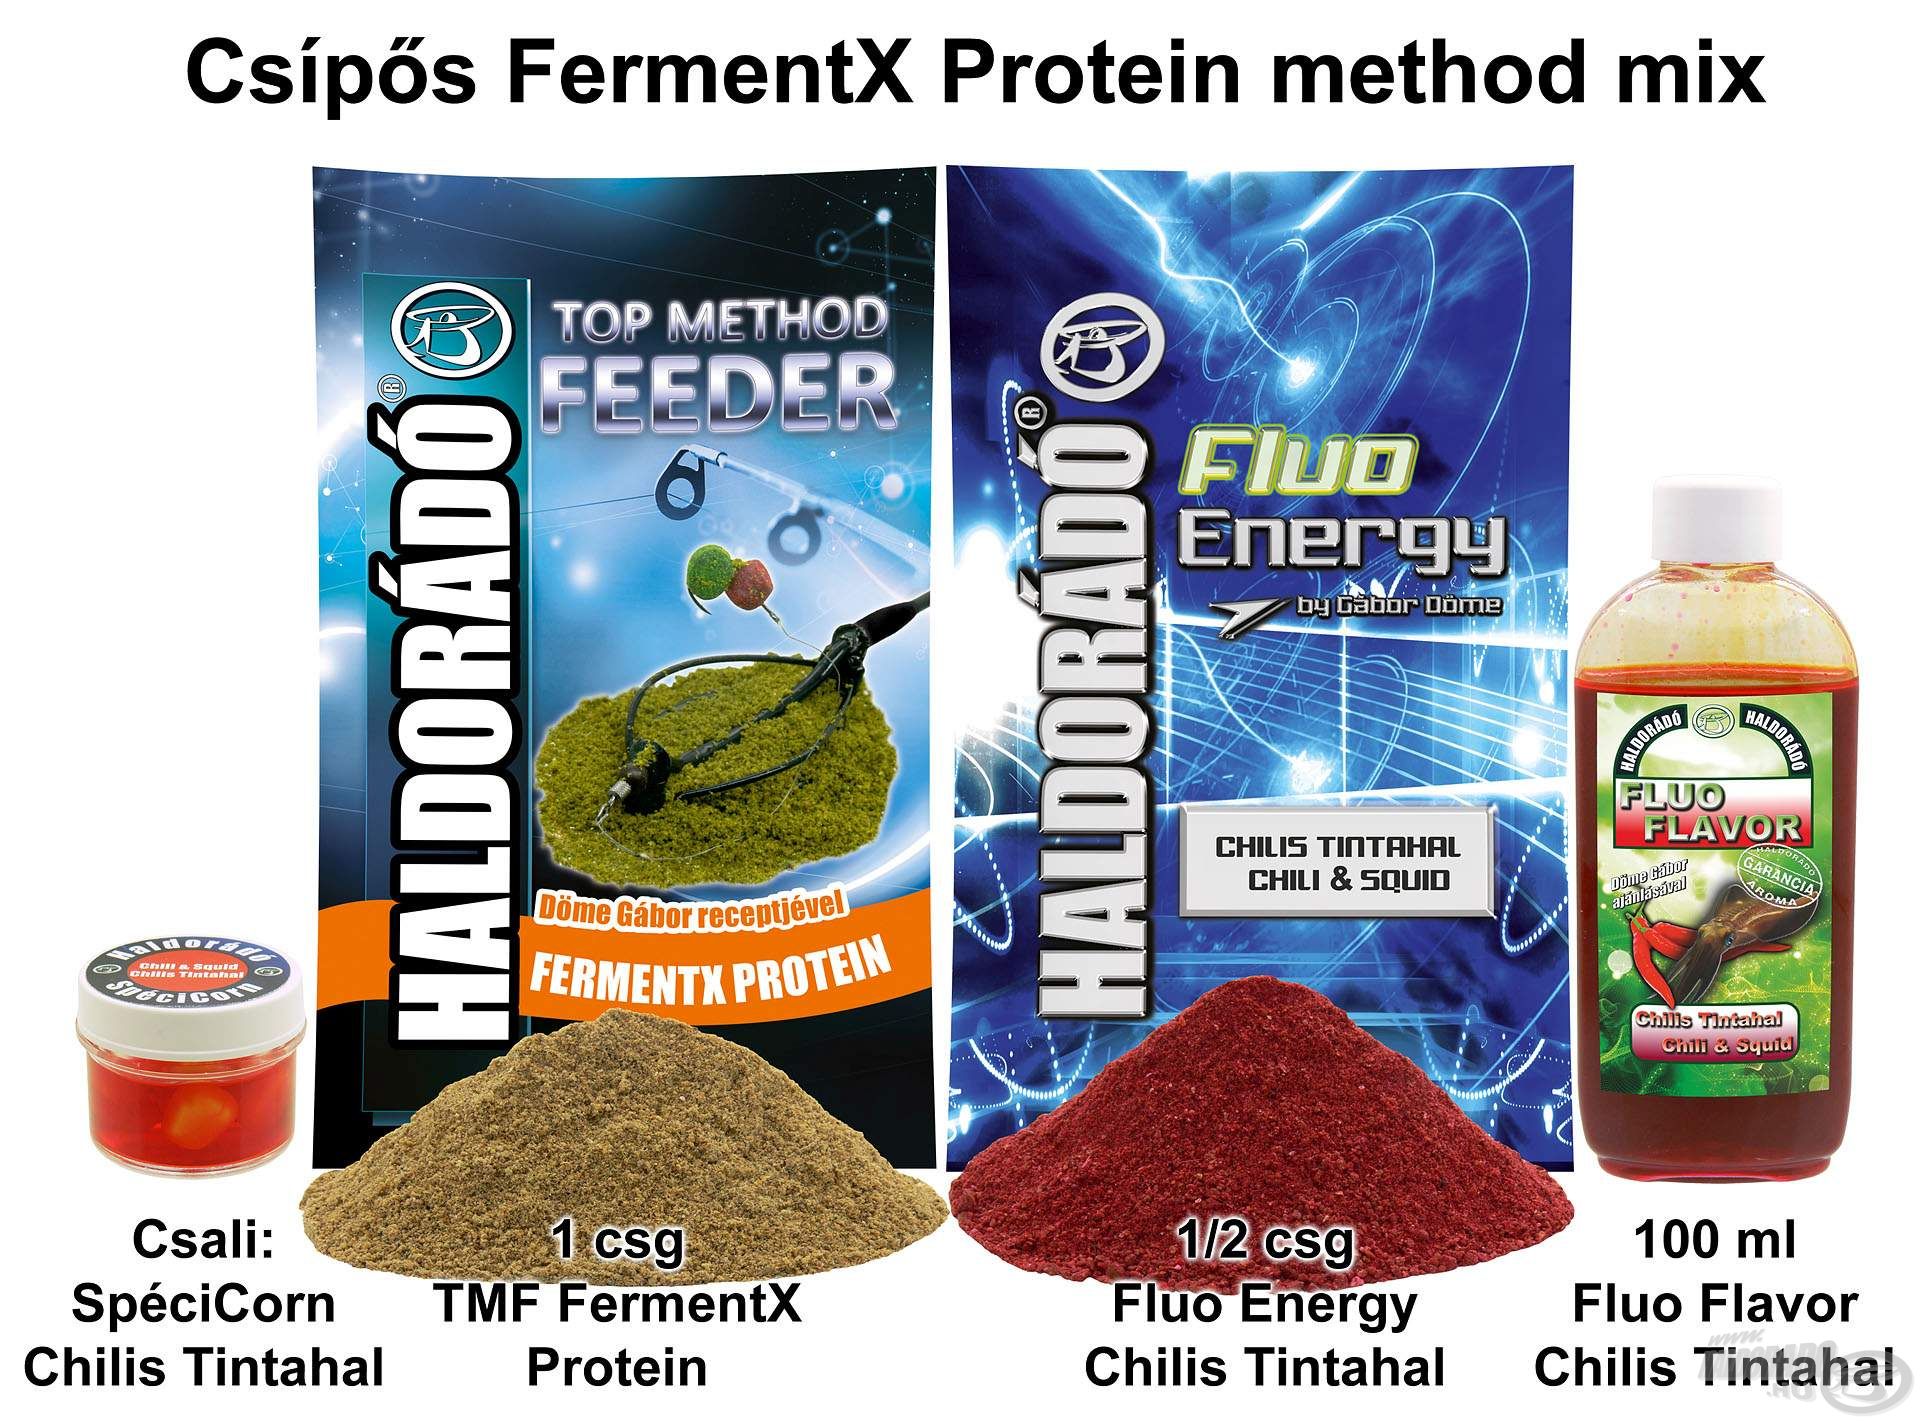 Csípős FermentX Protein method mix